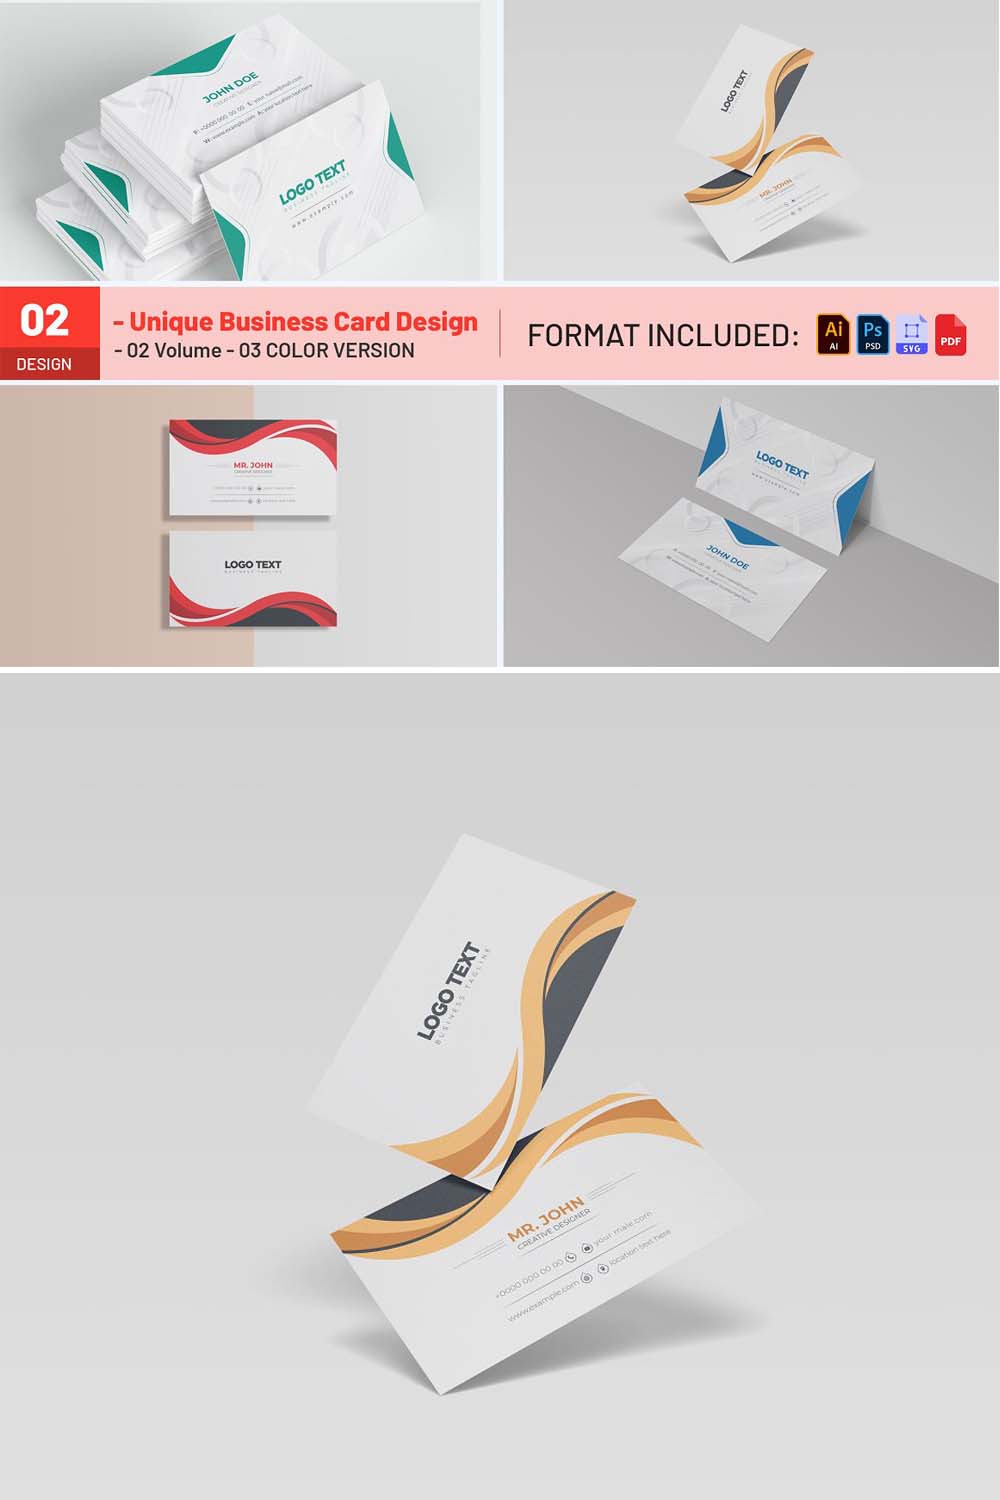 Unique Business Card Design pinterest preview image.